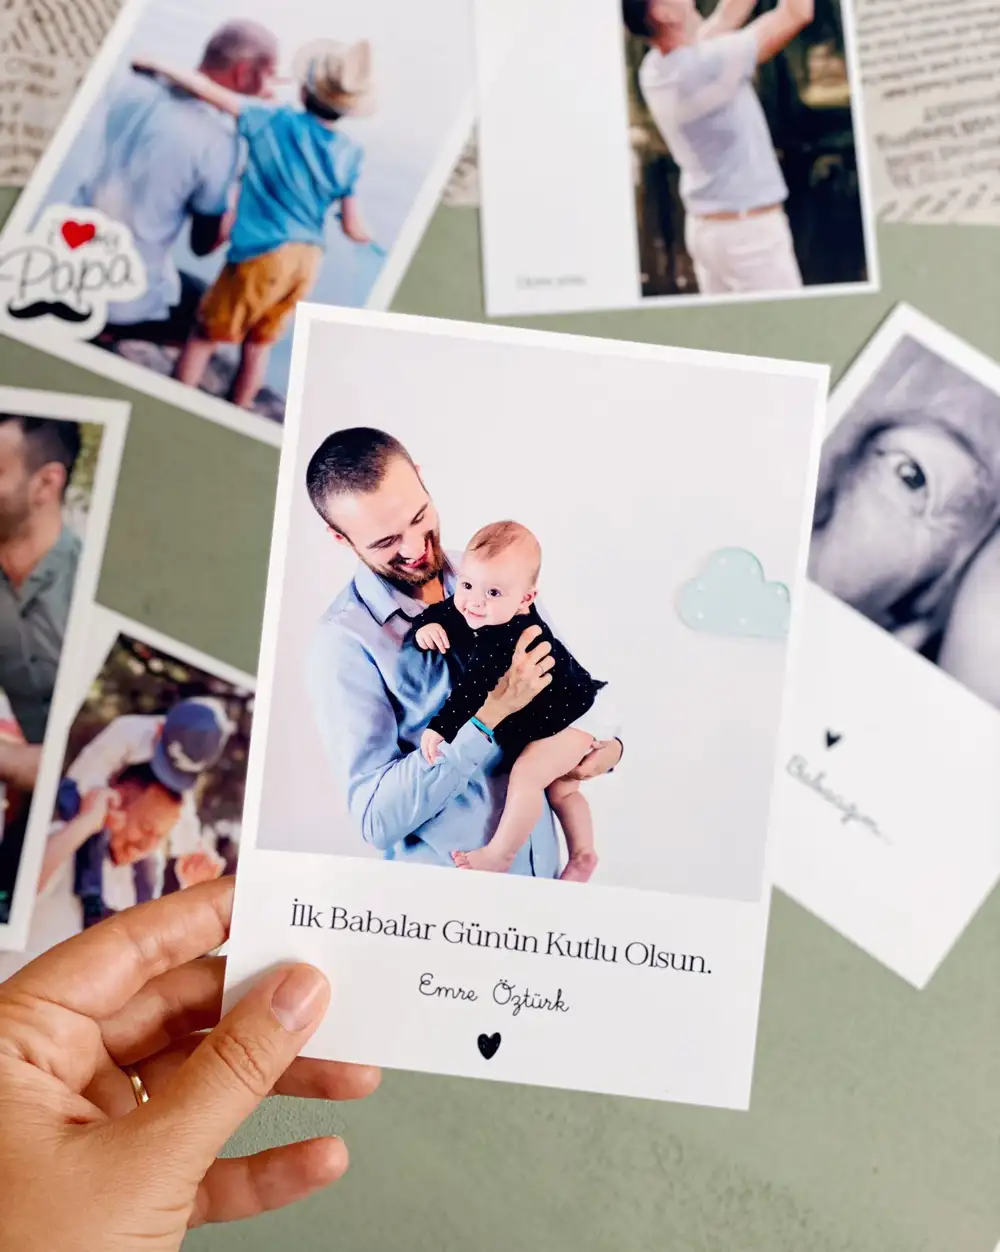 İlk Babalar Günün Kutlu Olsun Mesajlı Hediye Kişiye Özel İsim Yazılı Babalar Günü Fotoğraf Baskısı 13 x 18 cm